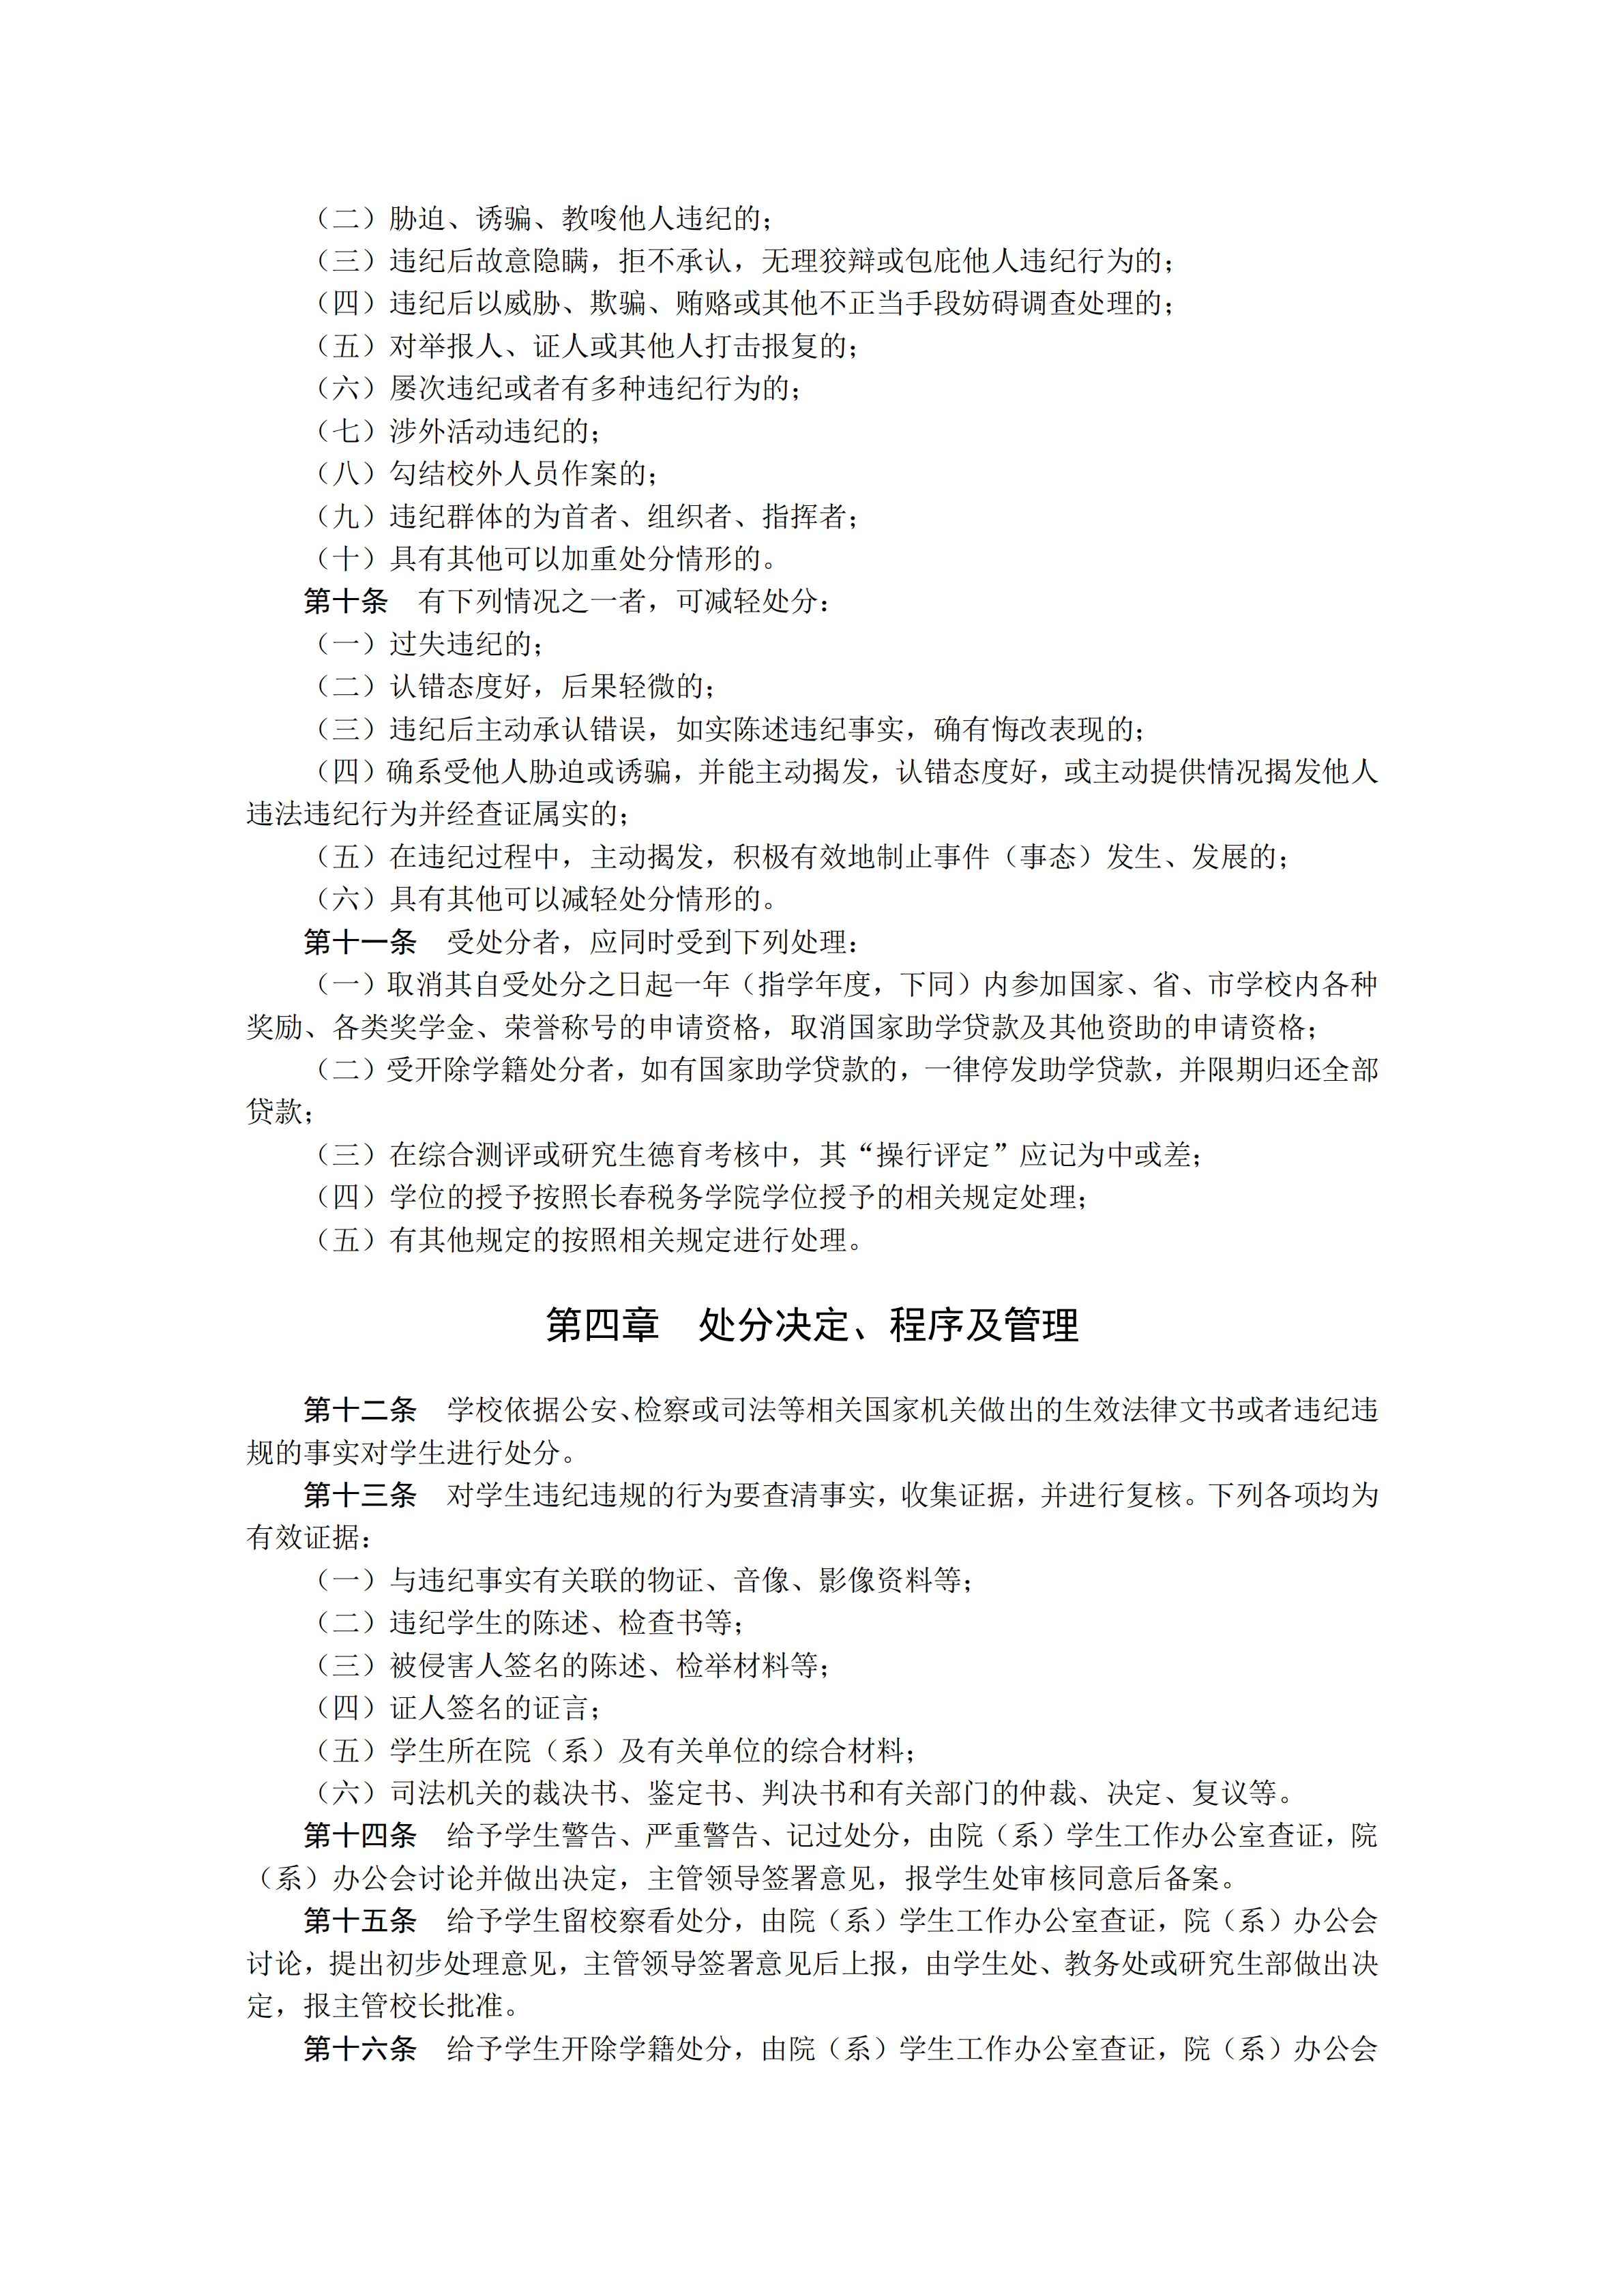 长春税务学院学生违纪处分制度pdf模板-2